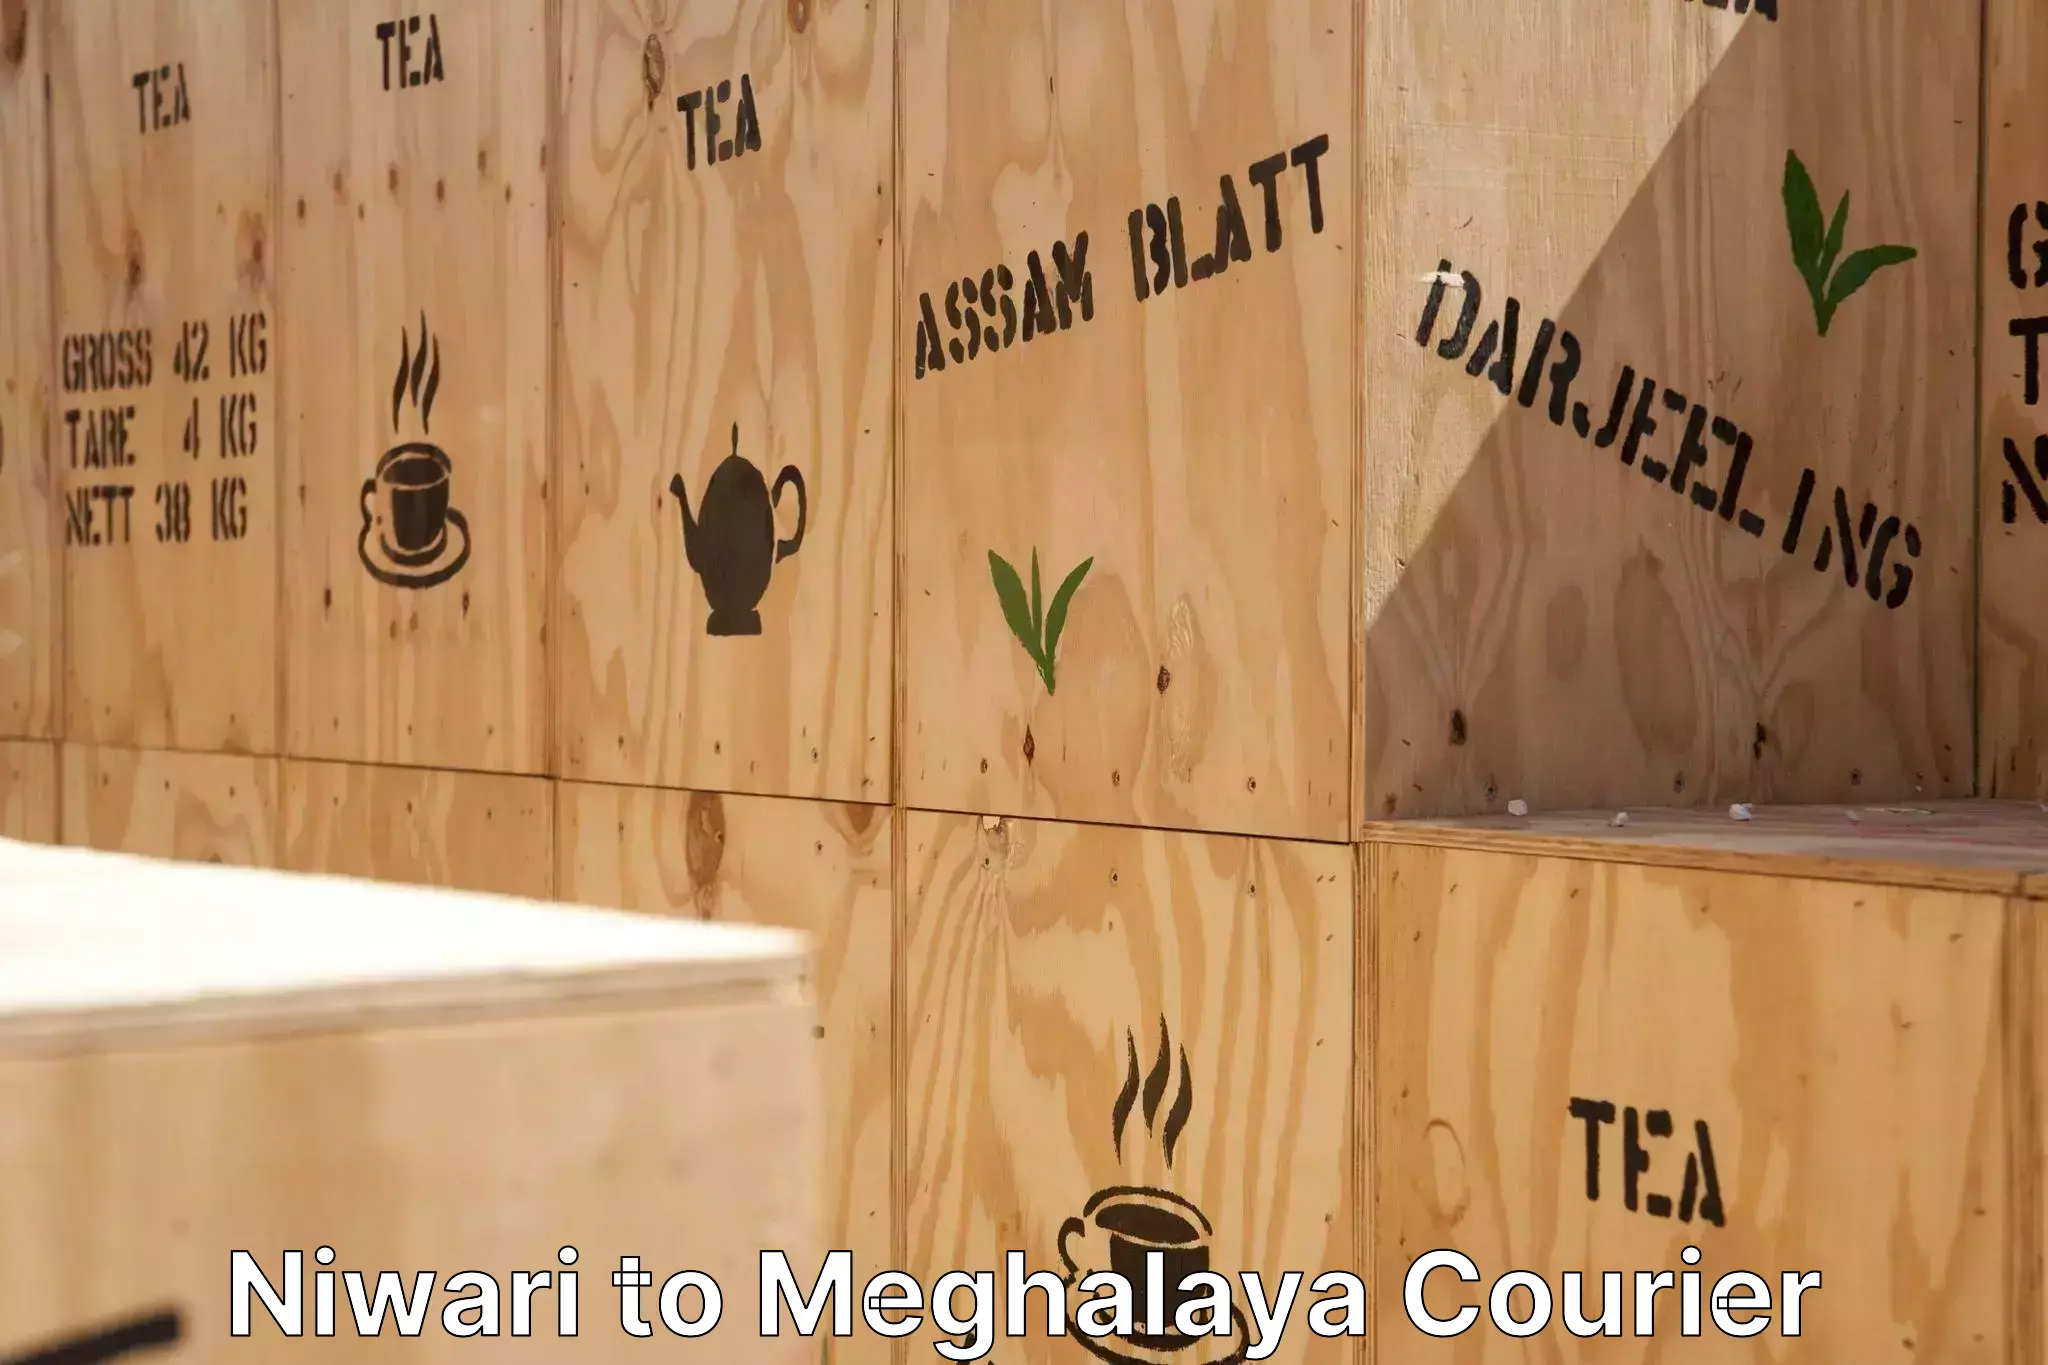 Professional furniture transport Niwari to Meghalaya